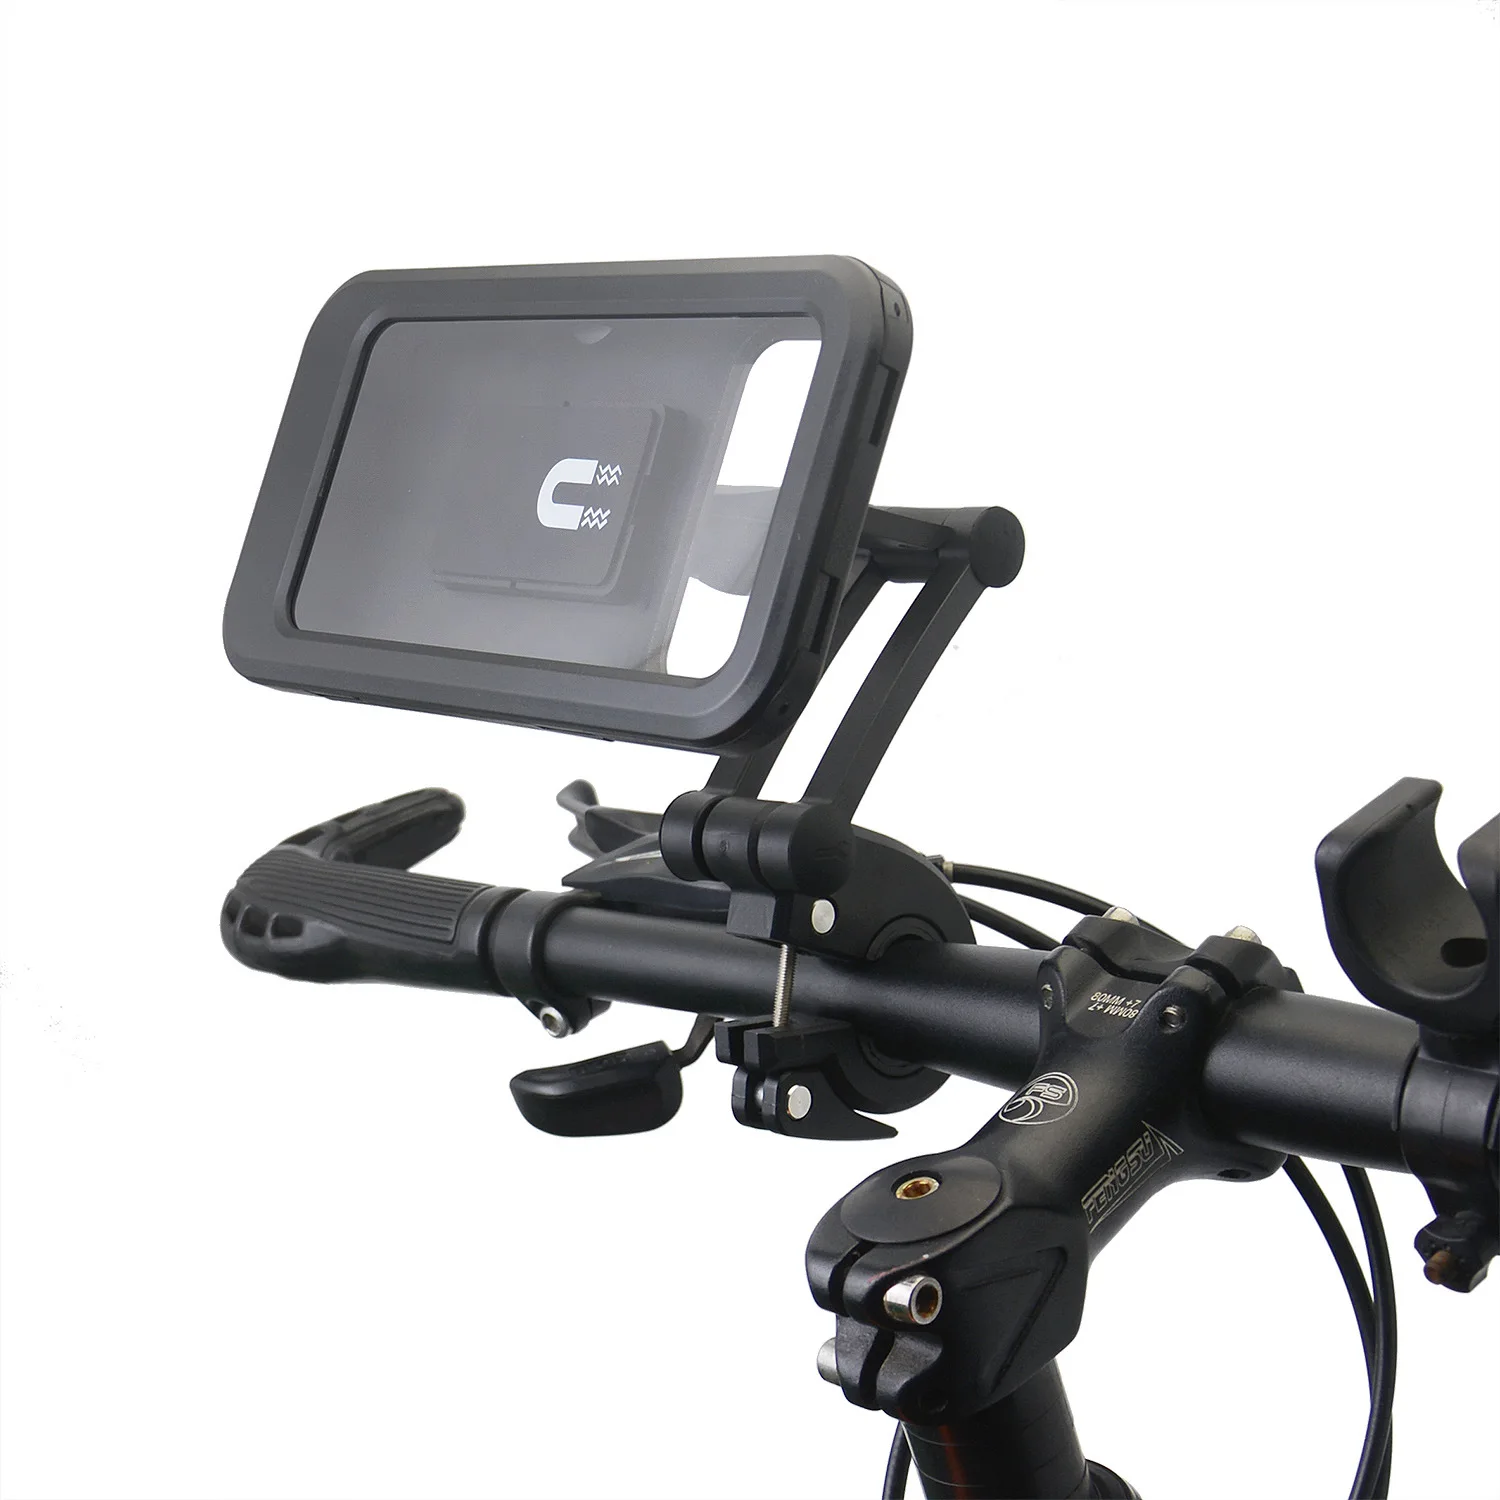 עמיד למים אופנוע אופניים לטלפון נייד בעל תמיכה אוניברסלית אופניים GPS 360 מעלות מסתובבות מתכוונן אופנוע נייד בעל